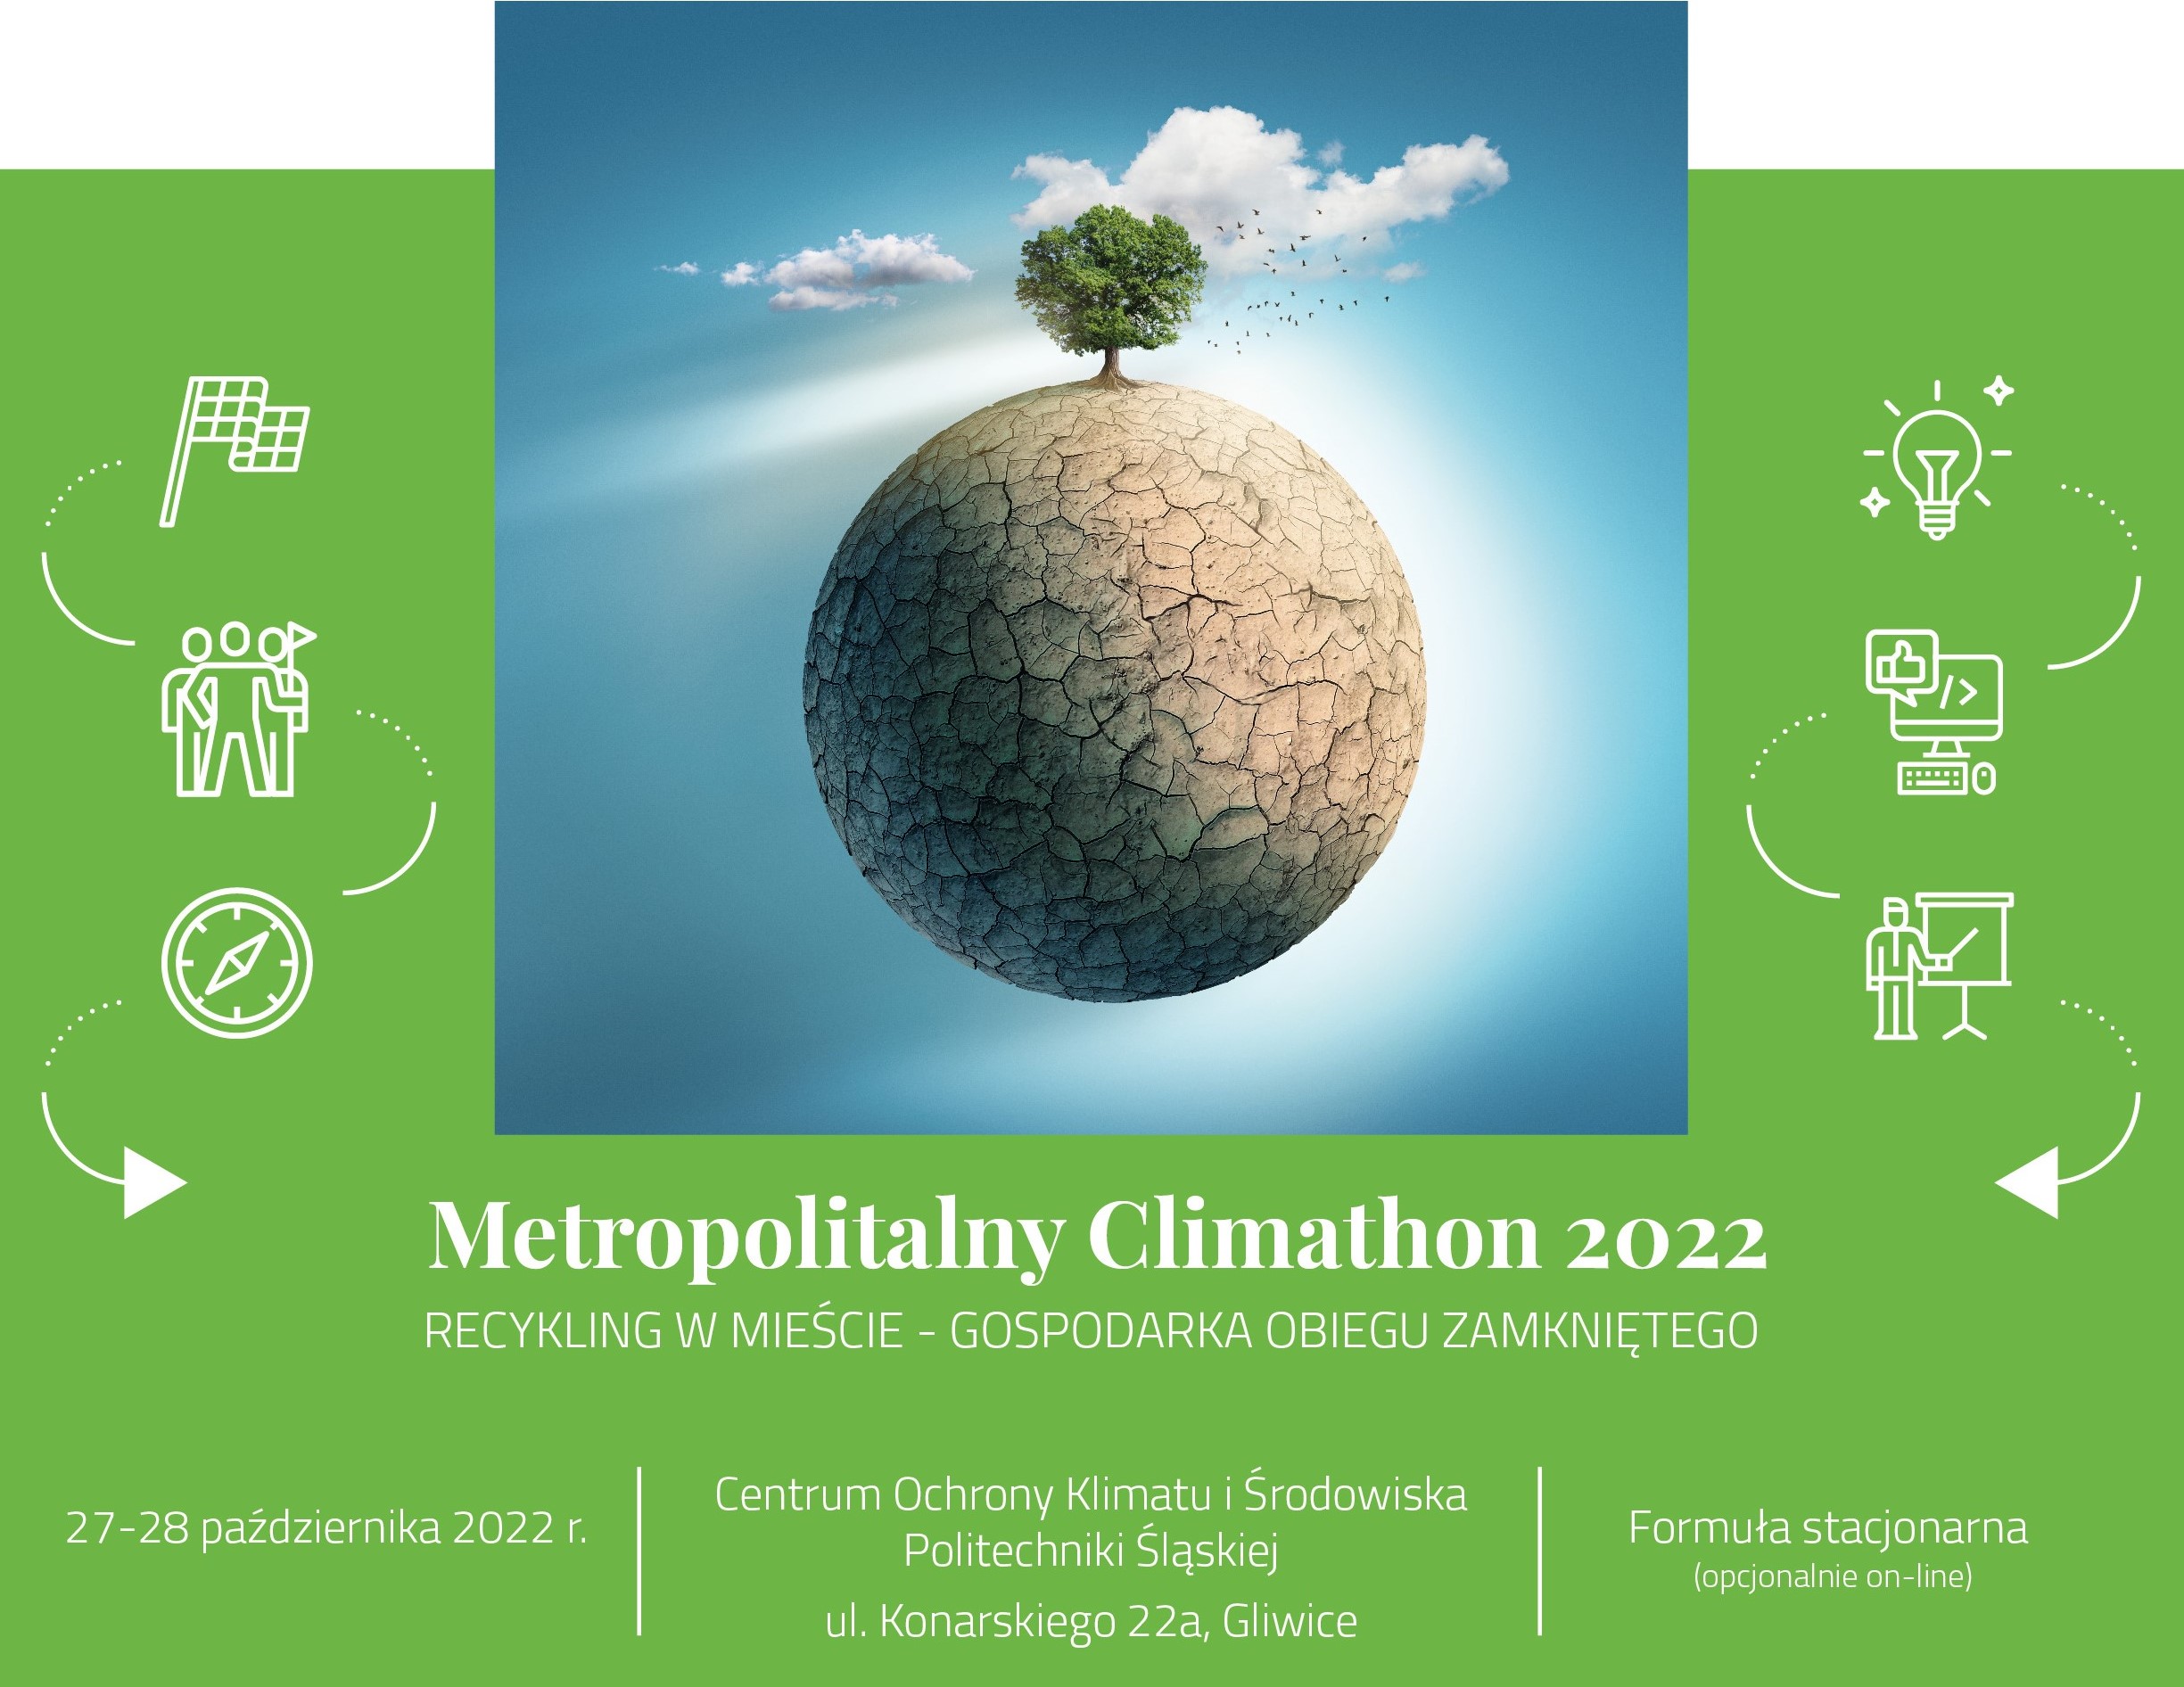 Ruszyły zapisy na Metropolitalny Climathon 2022